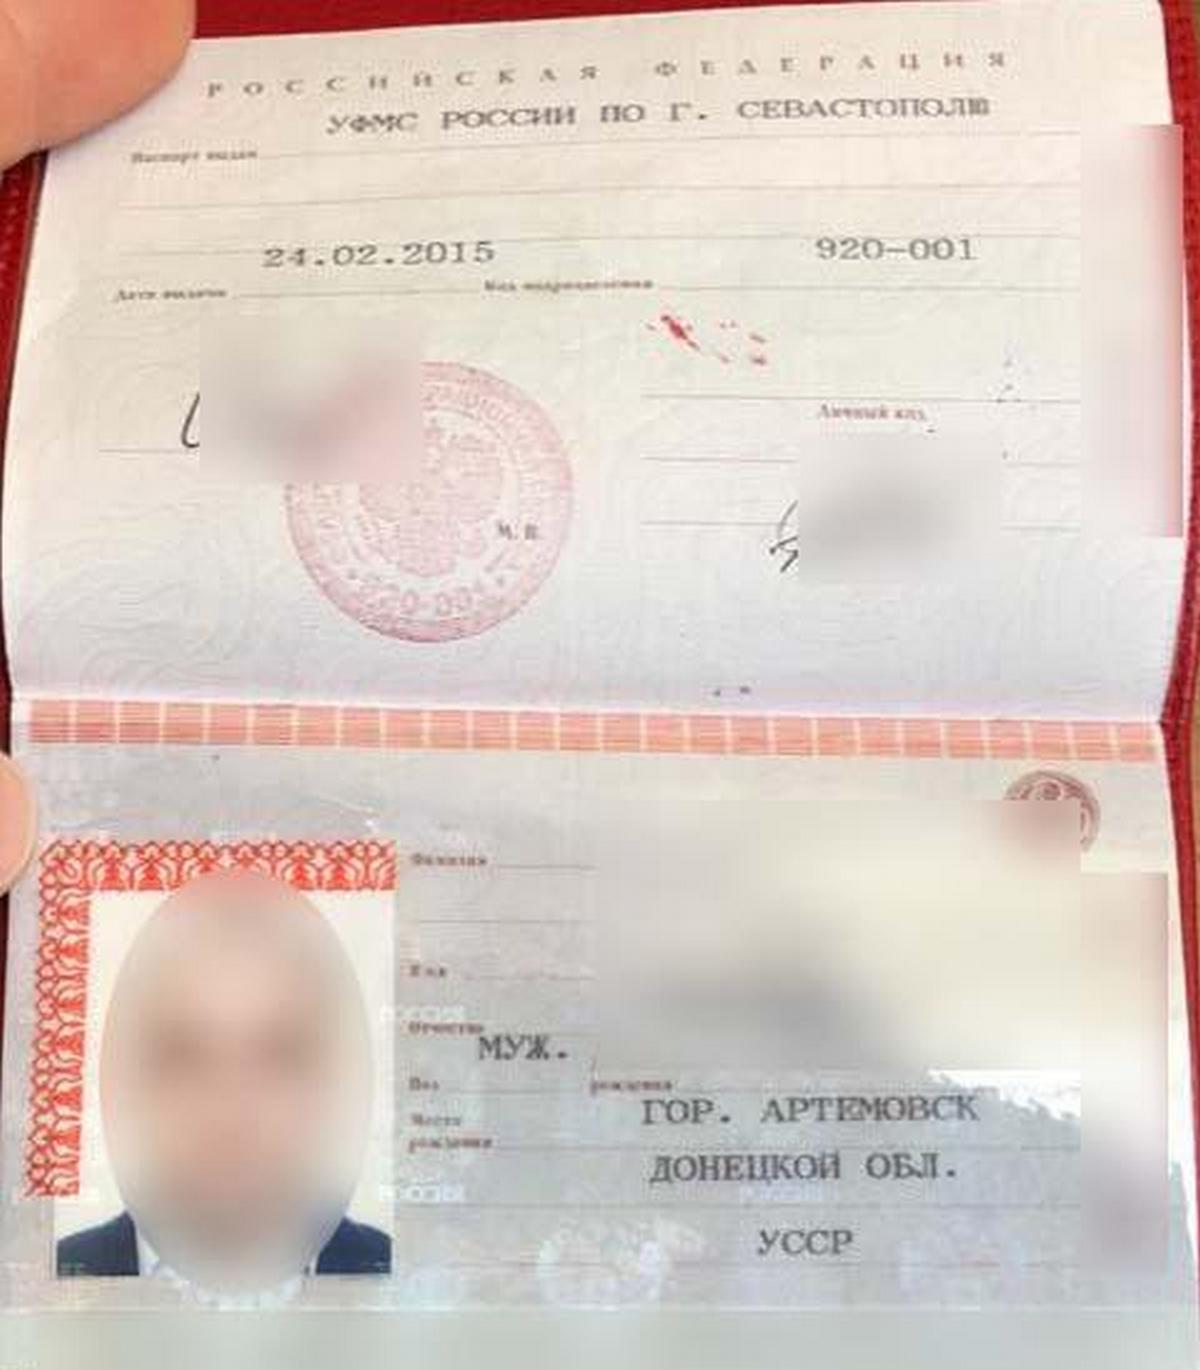 40-летний гражданин Украины, житель Днепра – получил паспорт гражданина российской федерации